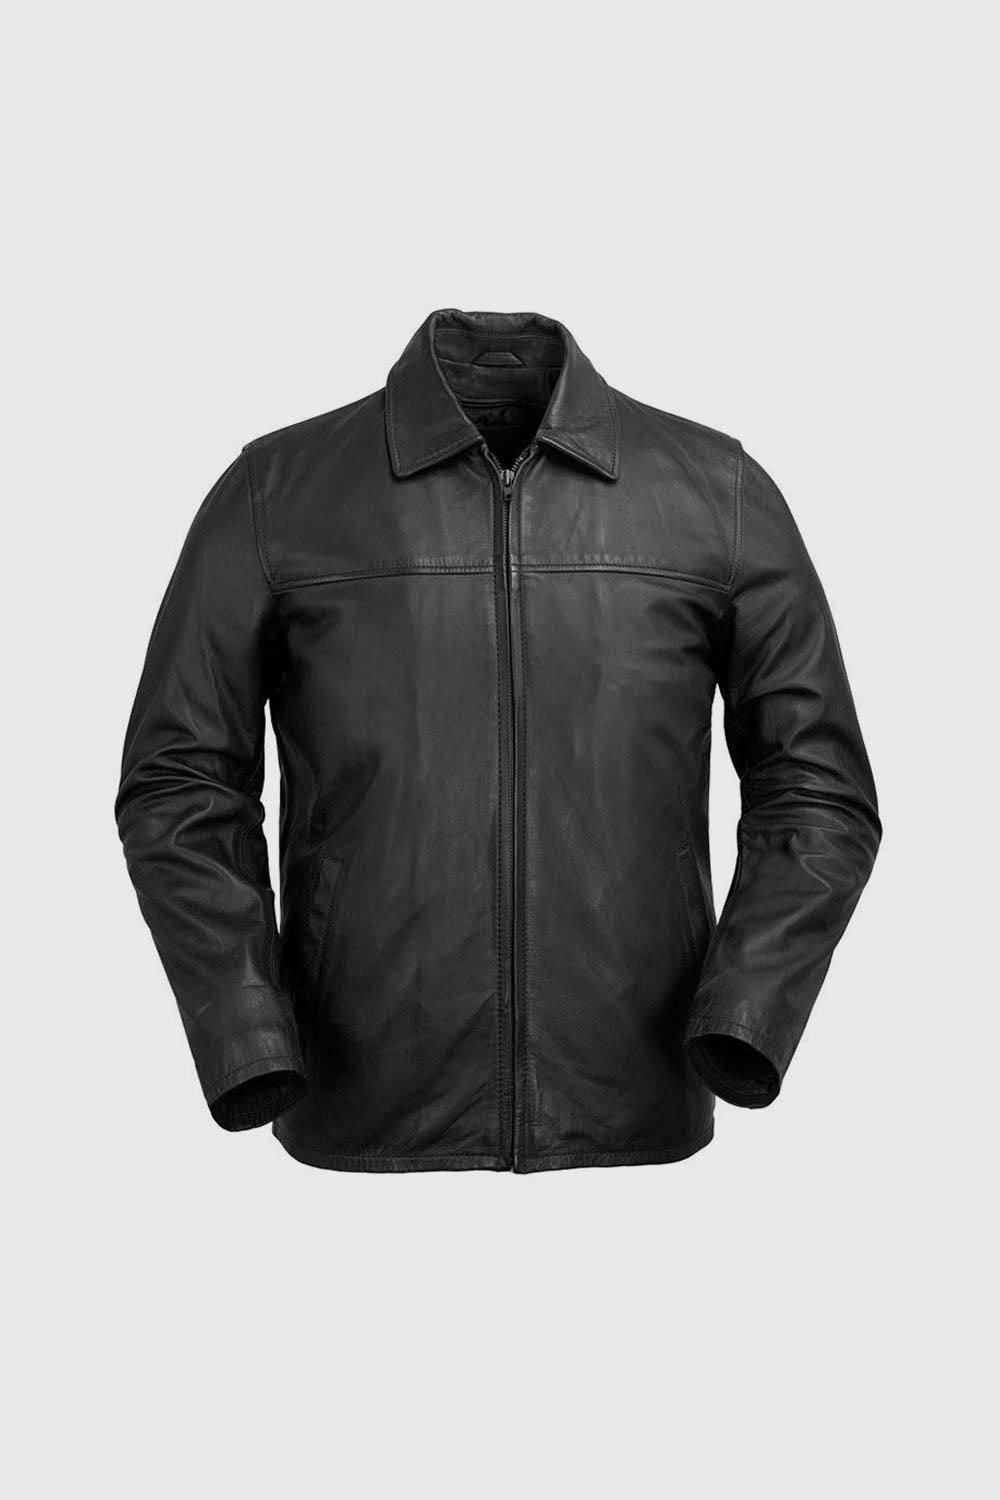 Indiana Mens Leather Jacket Men's Leather Jacket Whet Blu NYC S Black 